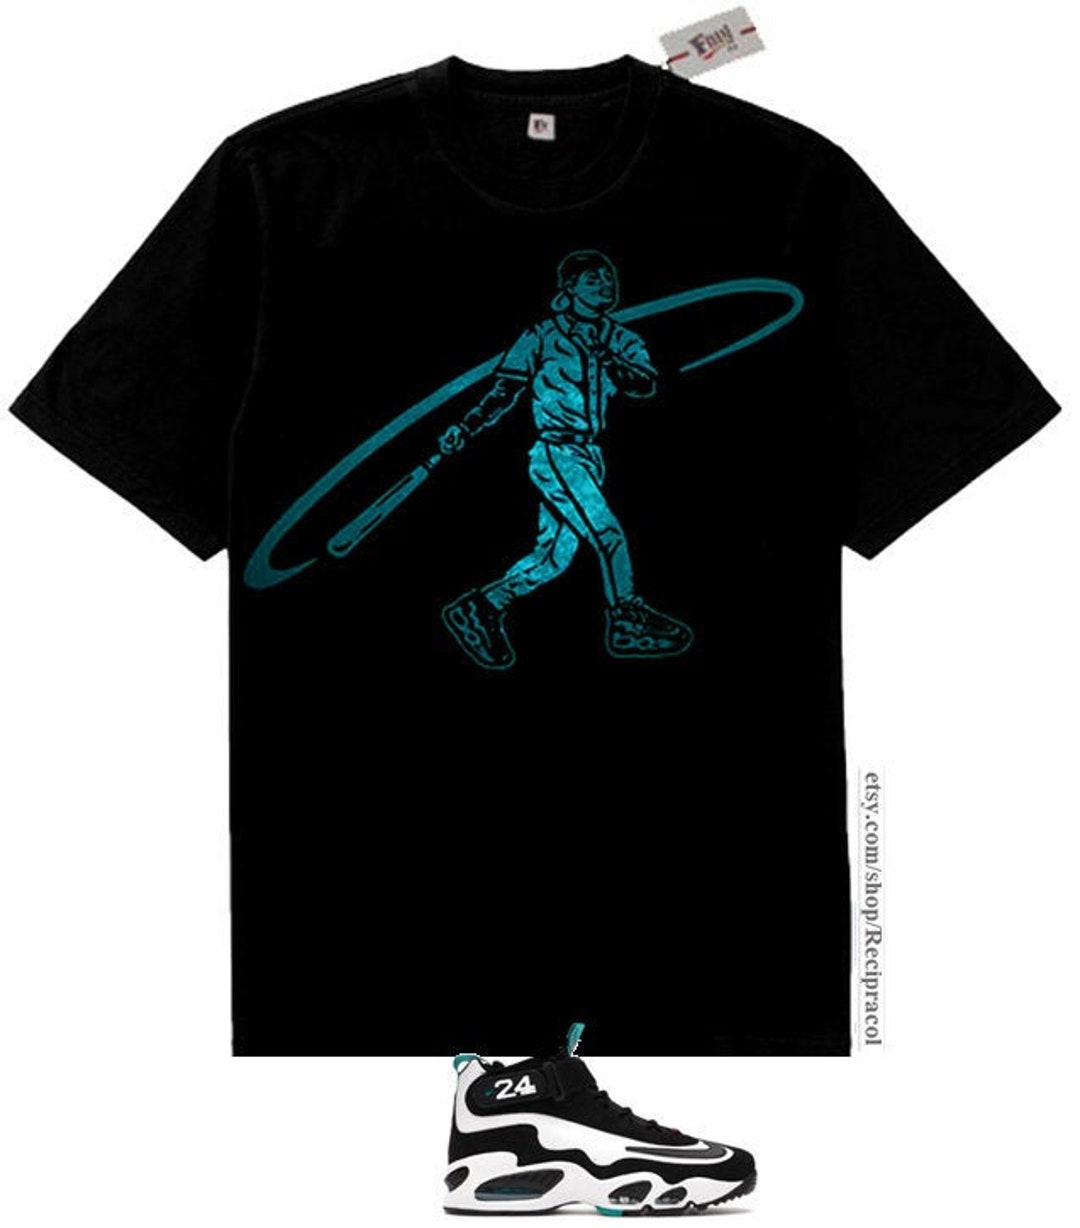 Ken Griffey Jr. Tee T-shirt - Sports - Magnet